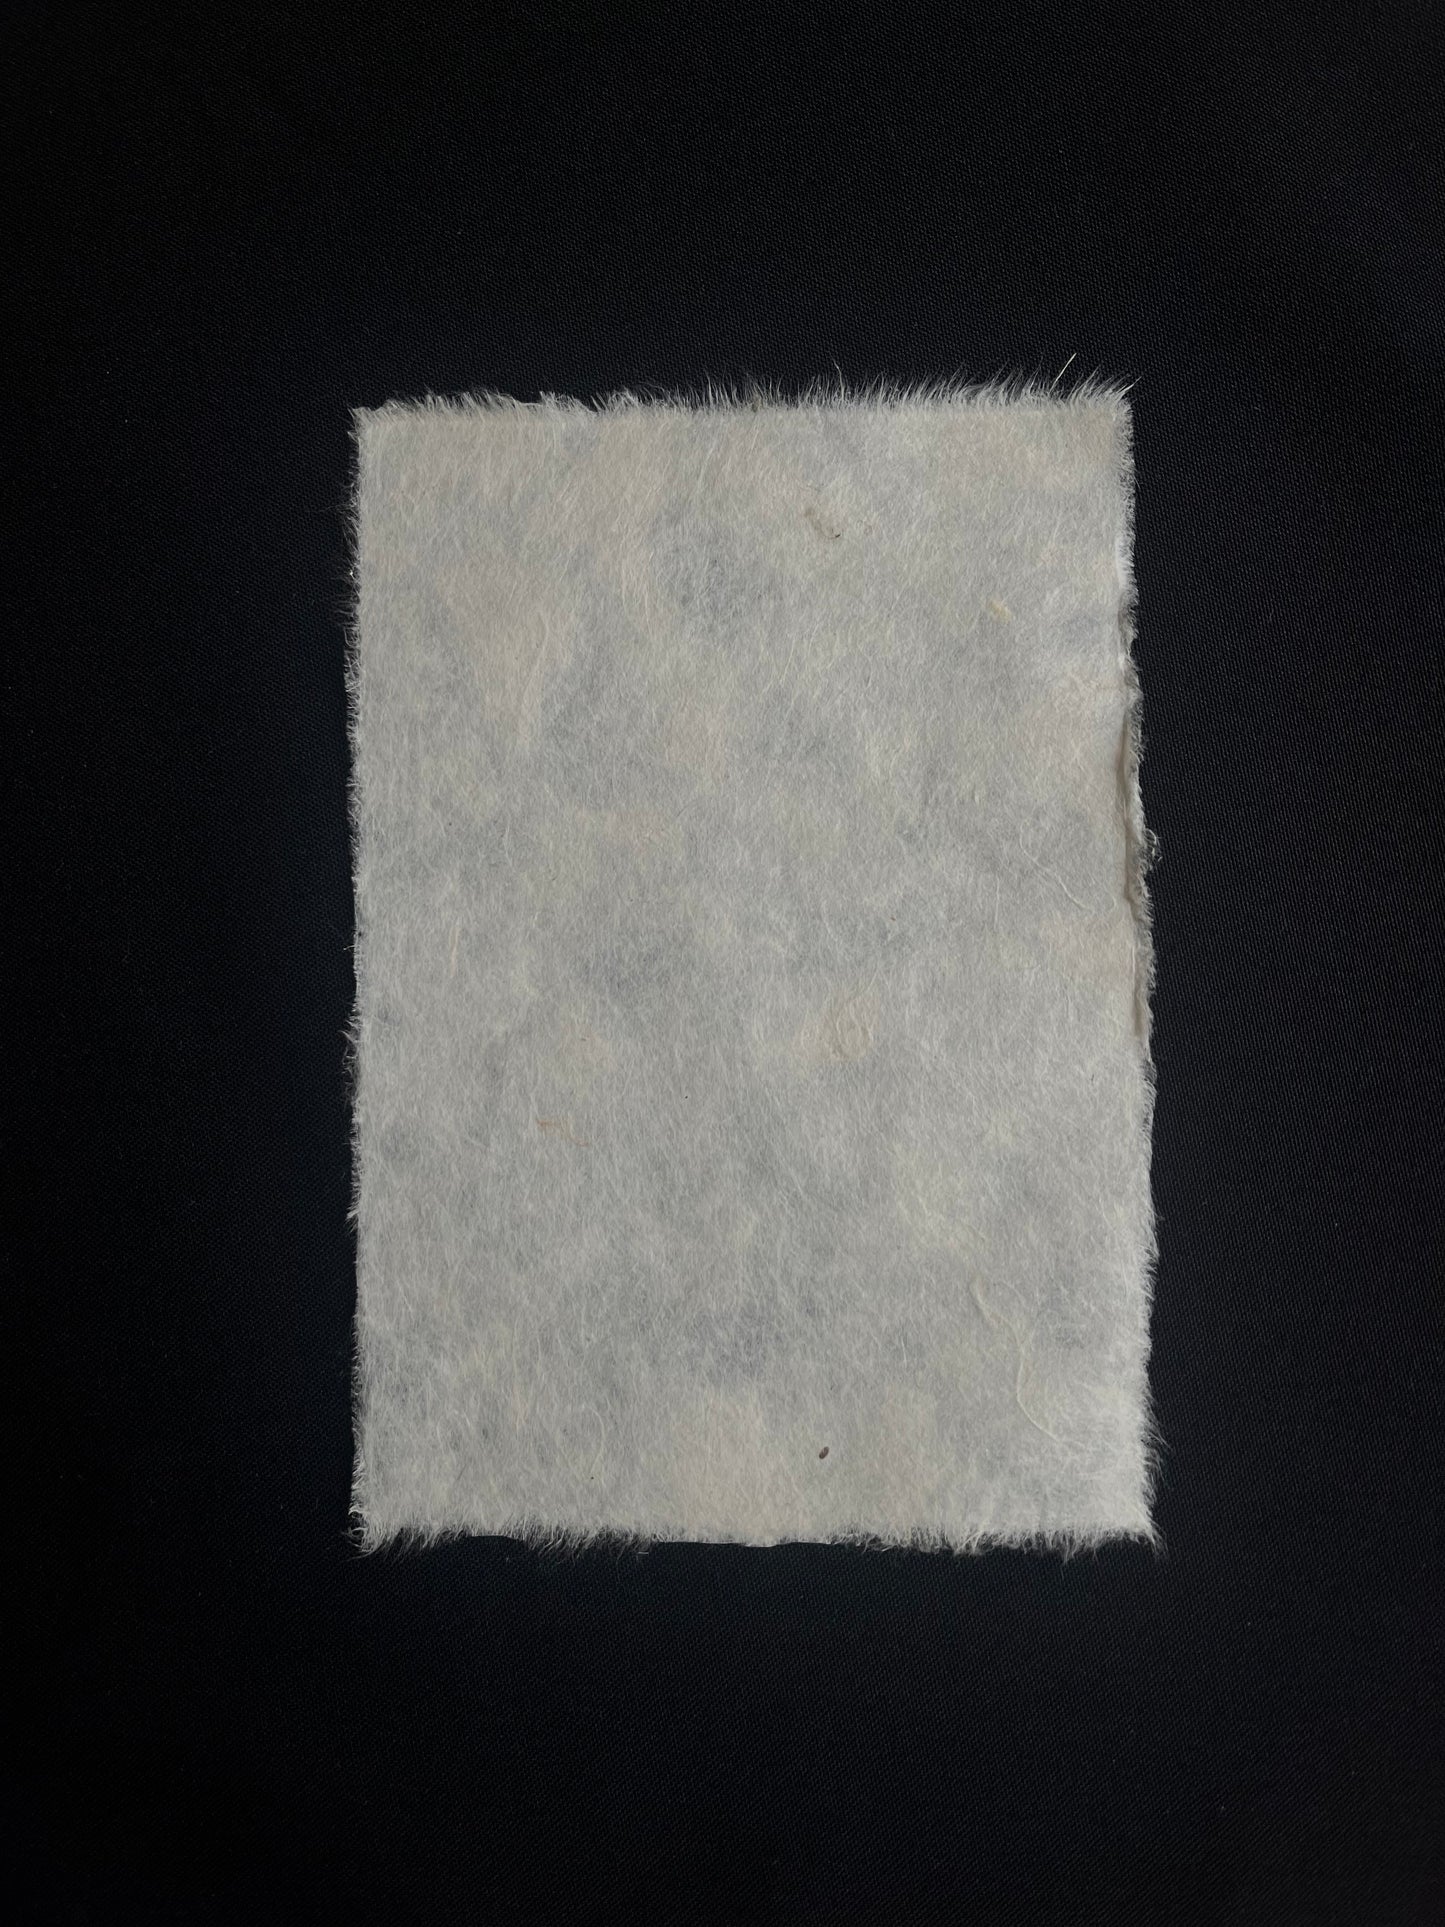 Sheets of Washi paper (Koso fibers) 70x50cm 25g